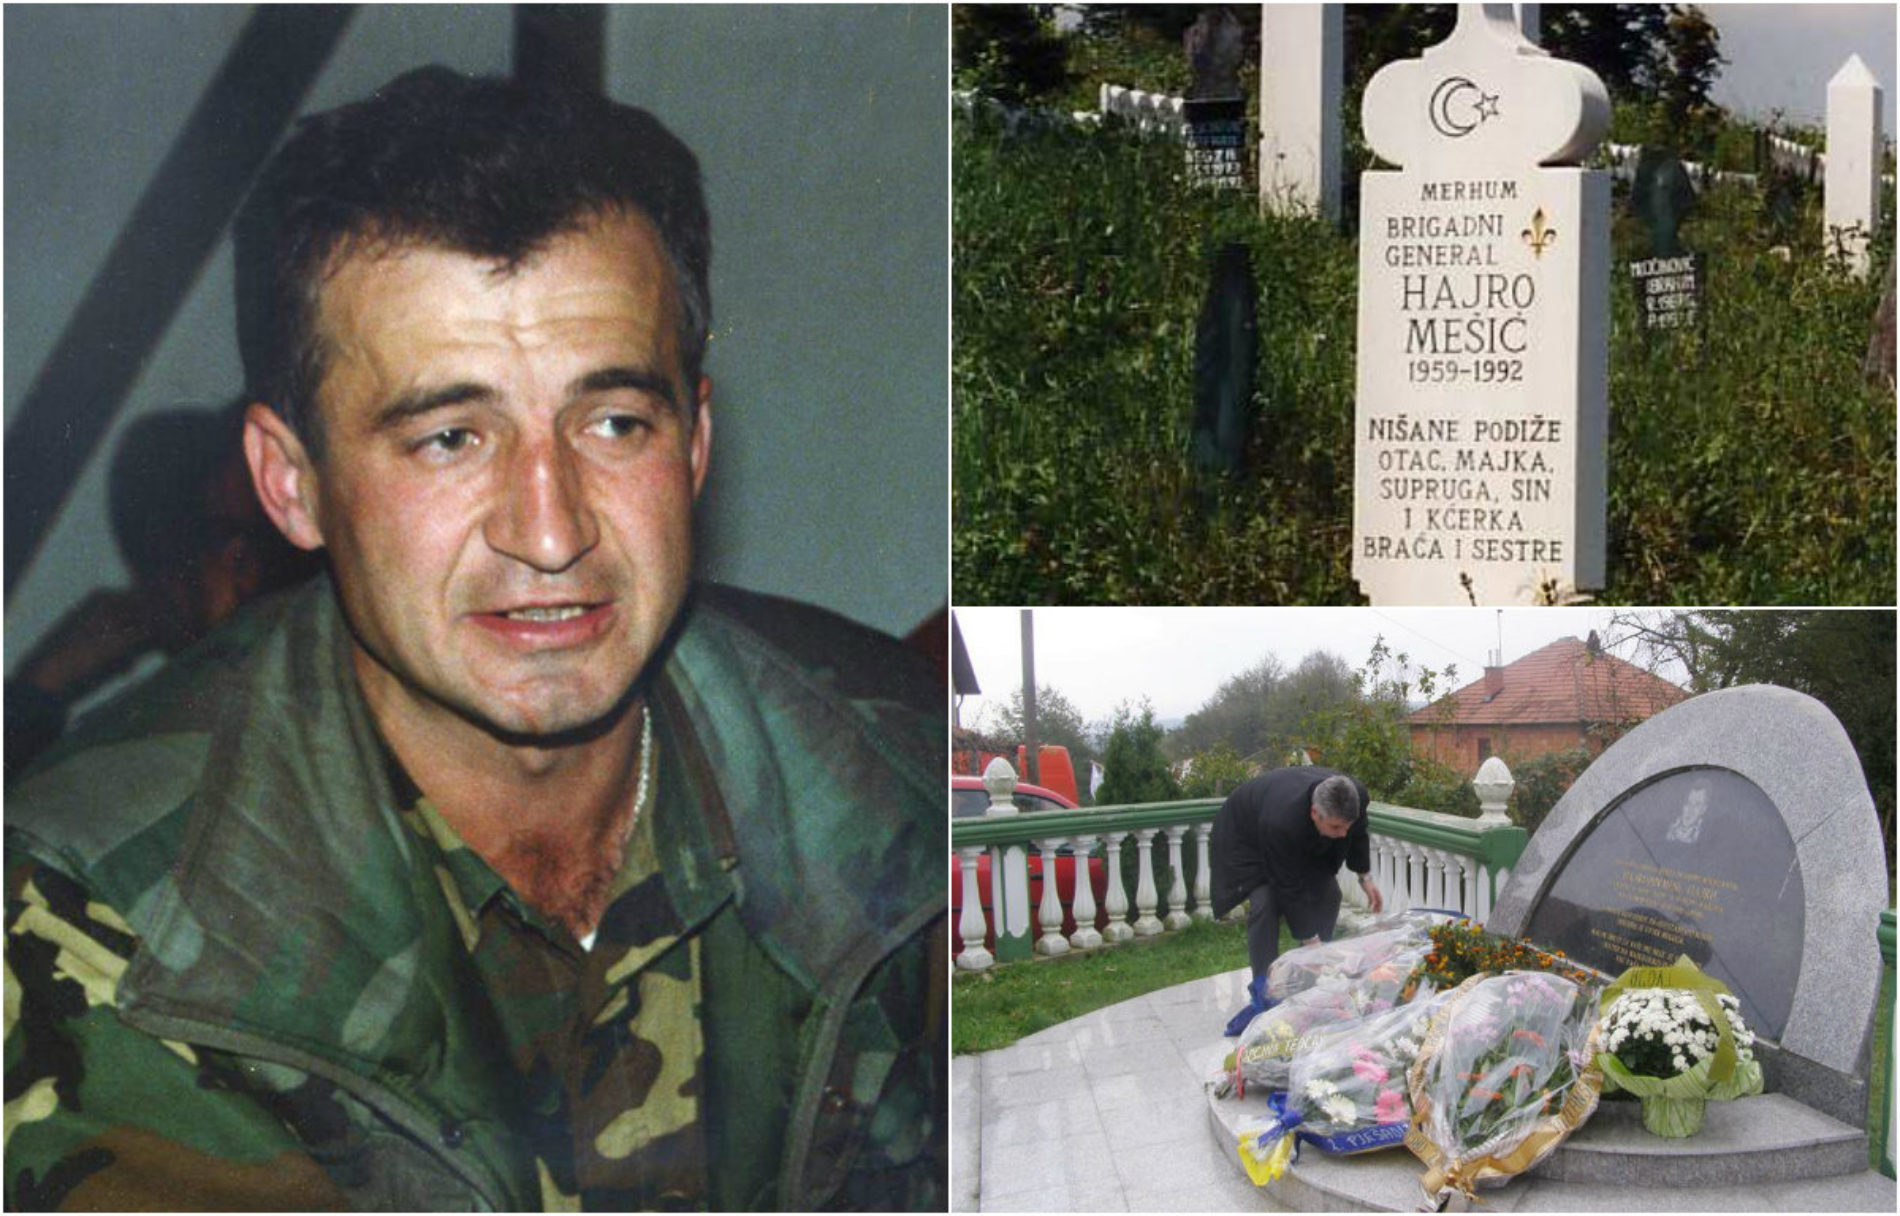 Godišnjica pogibije Kapetana Hajre, jednog od najvećih heroja Bosne